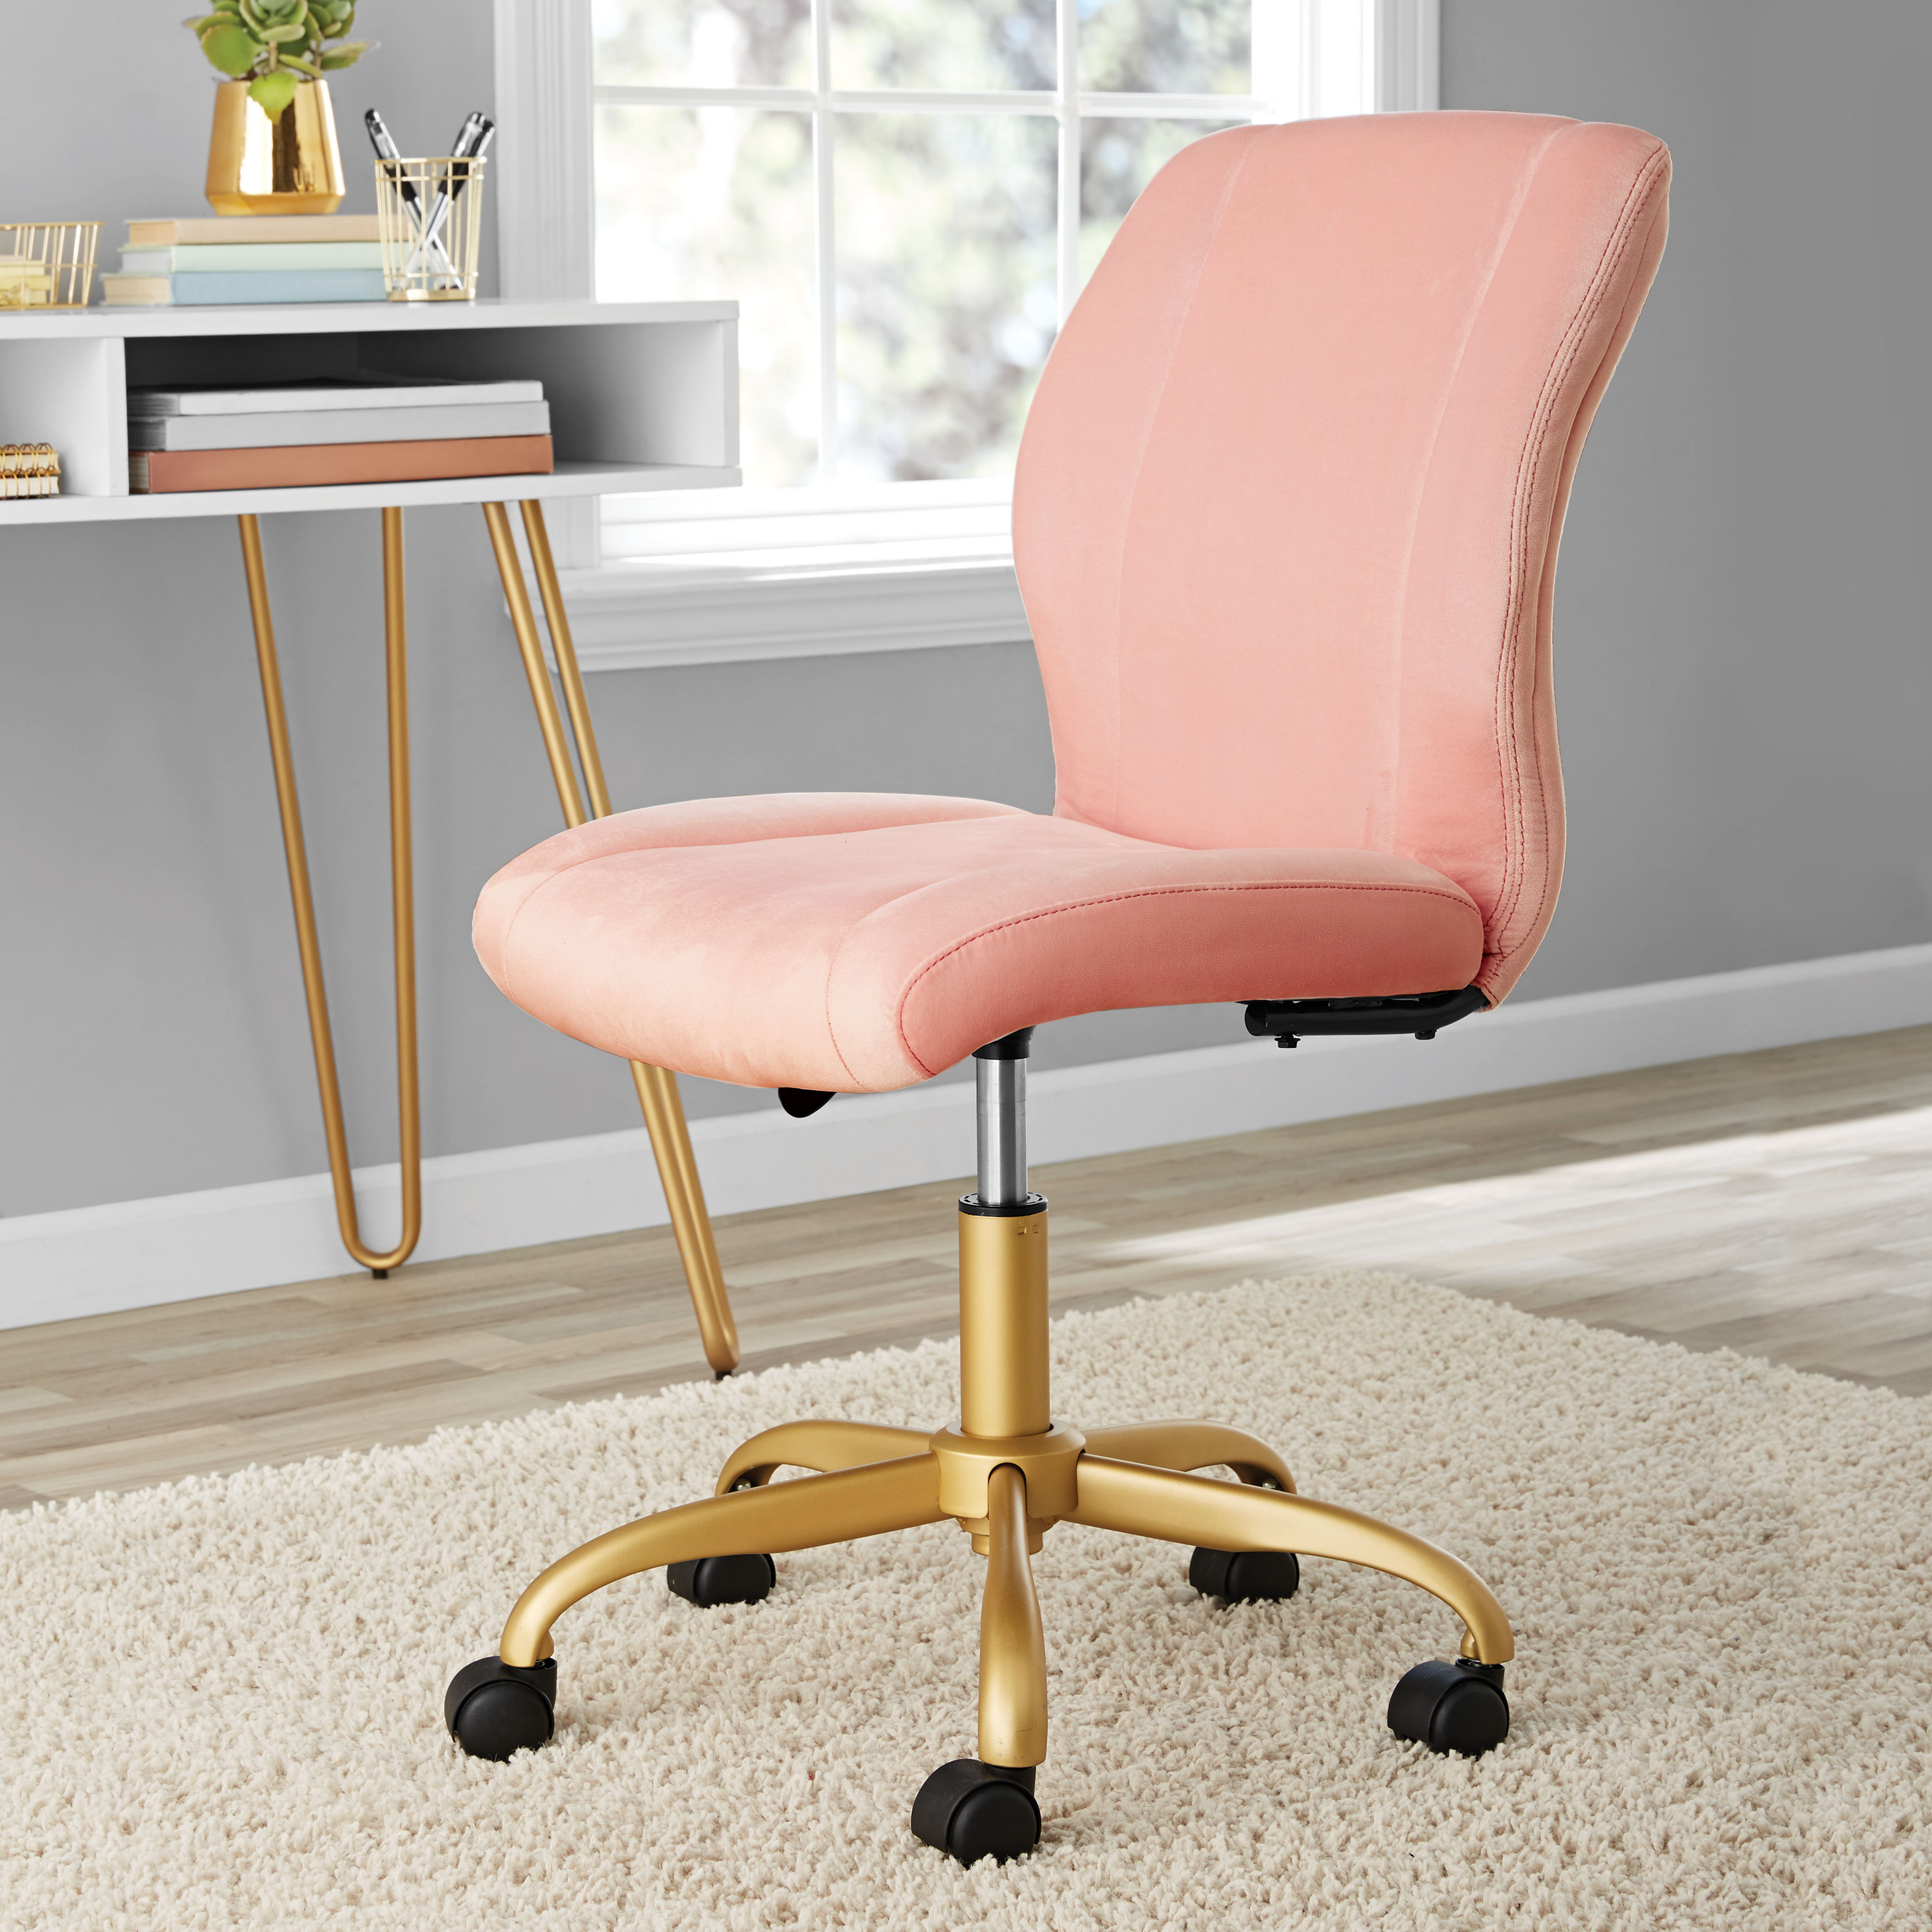 Mainstays Plush Velvet Office Chair, Pearl Blush - image 2 of 10